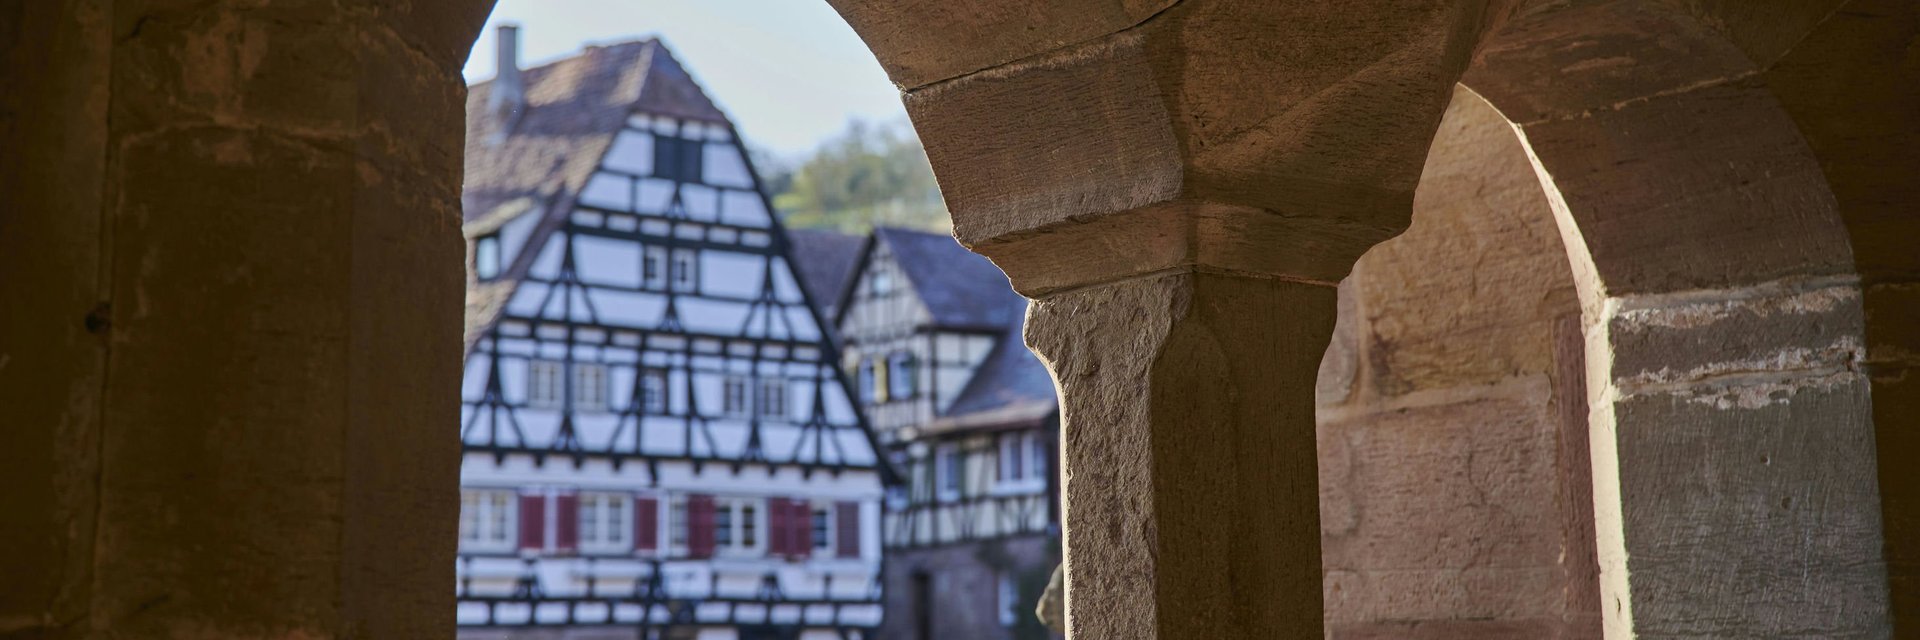 UNESCO-Welterbe Kloster Schöntal | Kraichgau-Stromberg Tourismus | @Christian Ernst